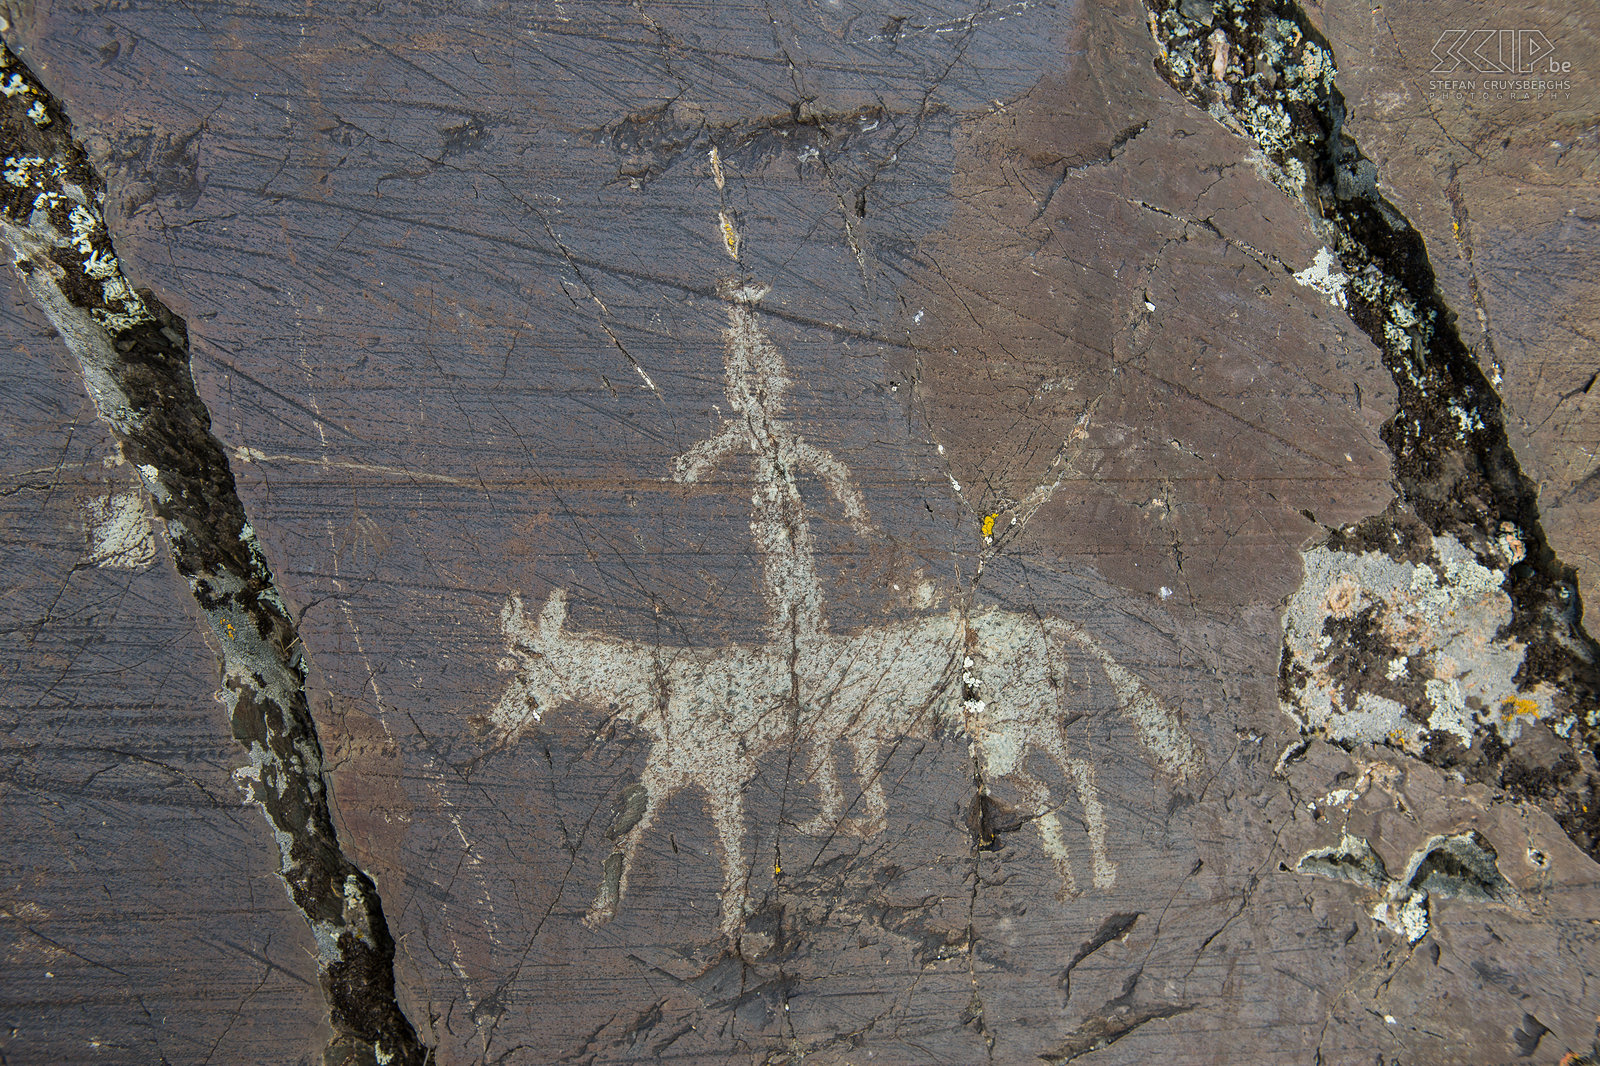 Altai Tavan Bogd - Prehistorische rotstekening Deze prehistorische rotstekingen bevatten ook jachttaferelen met mensen te paard. Stefan Cruysberghs